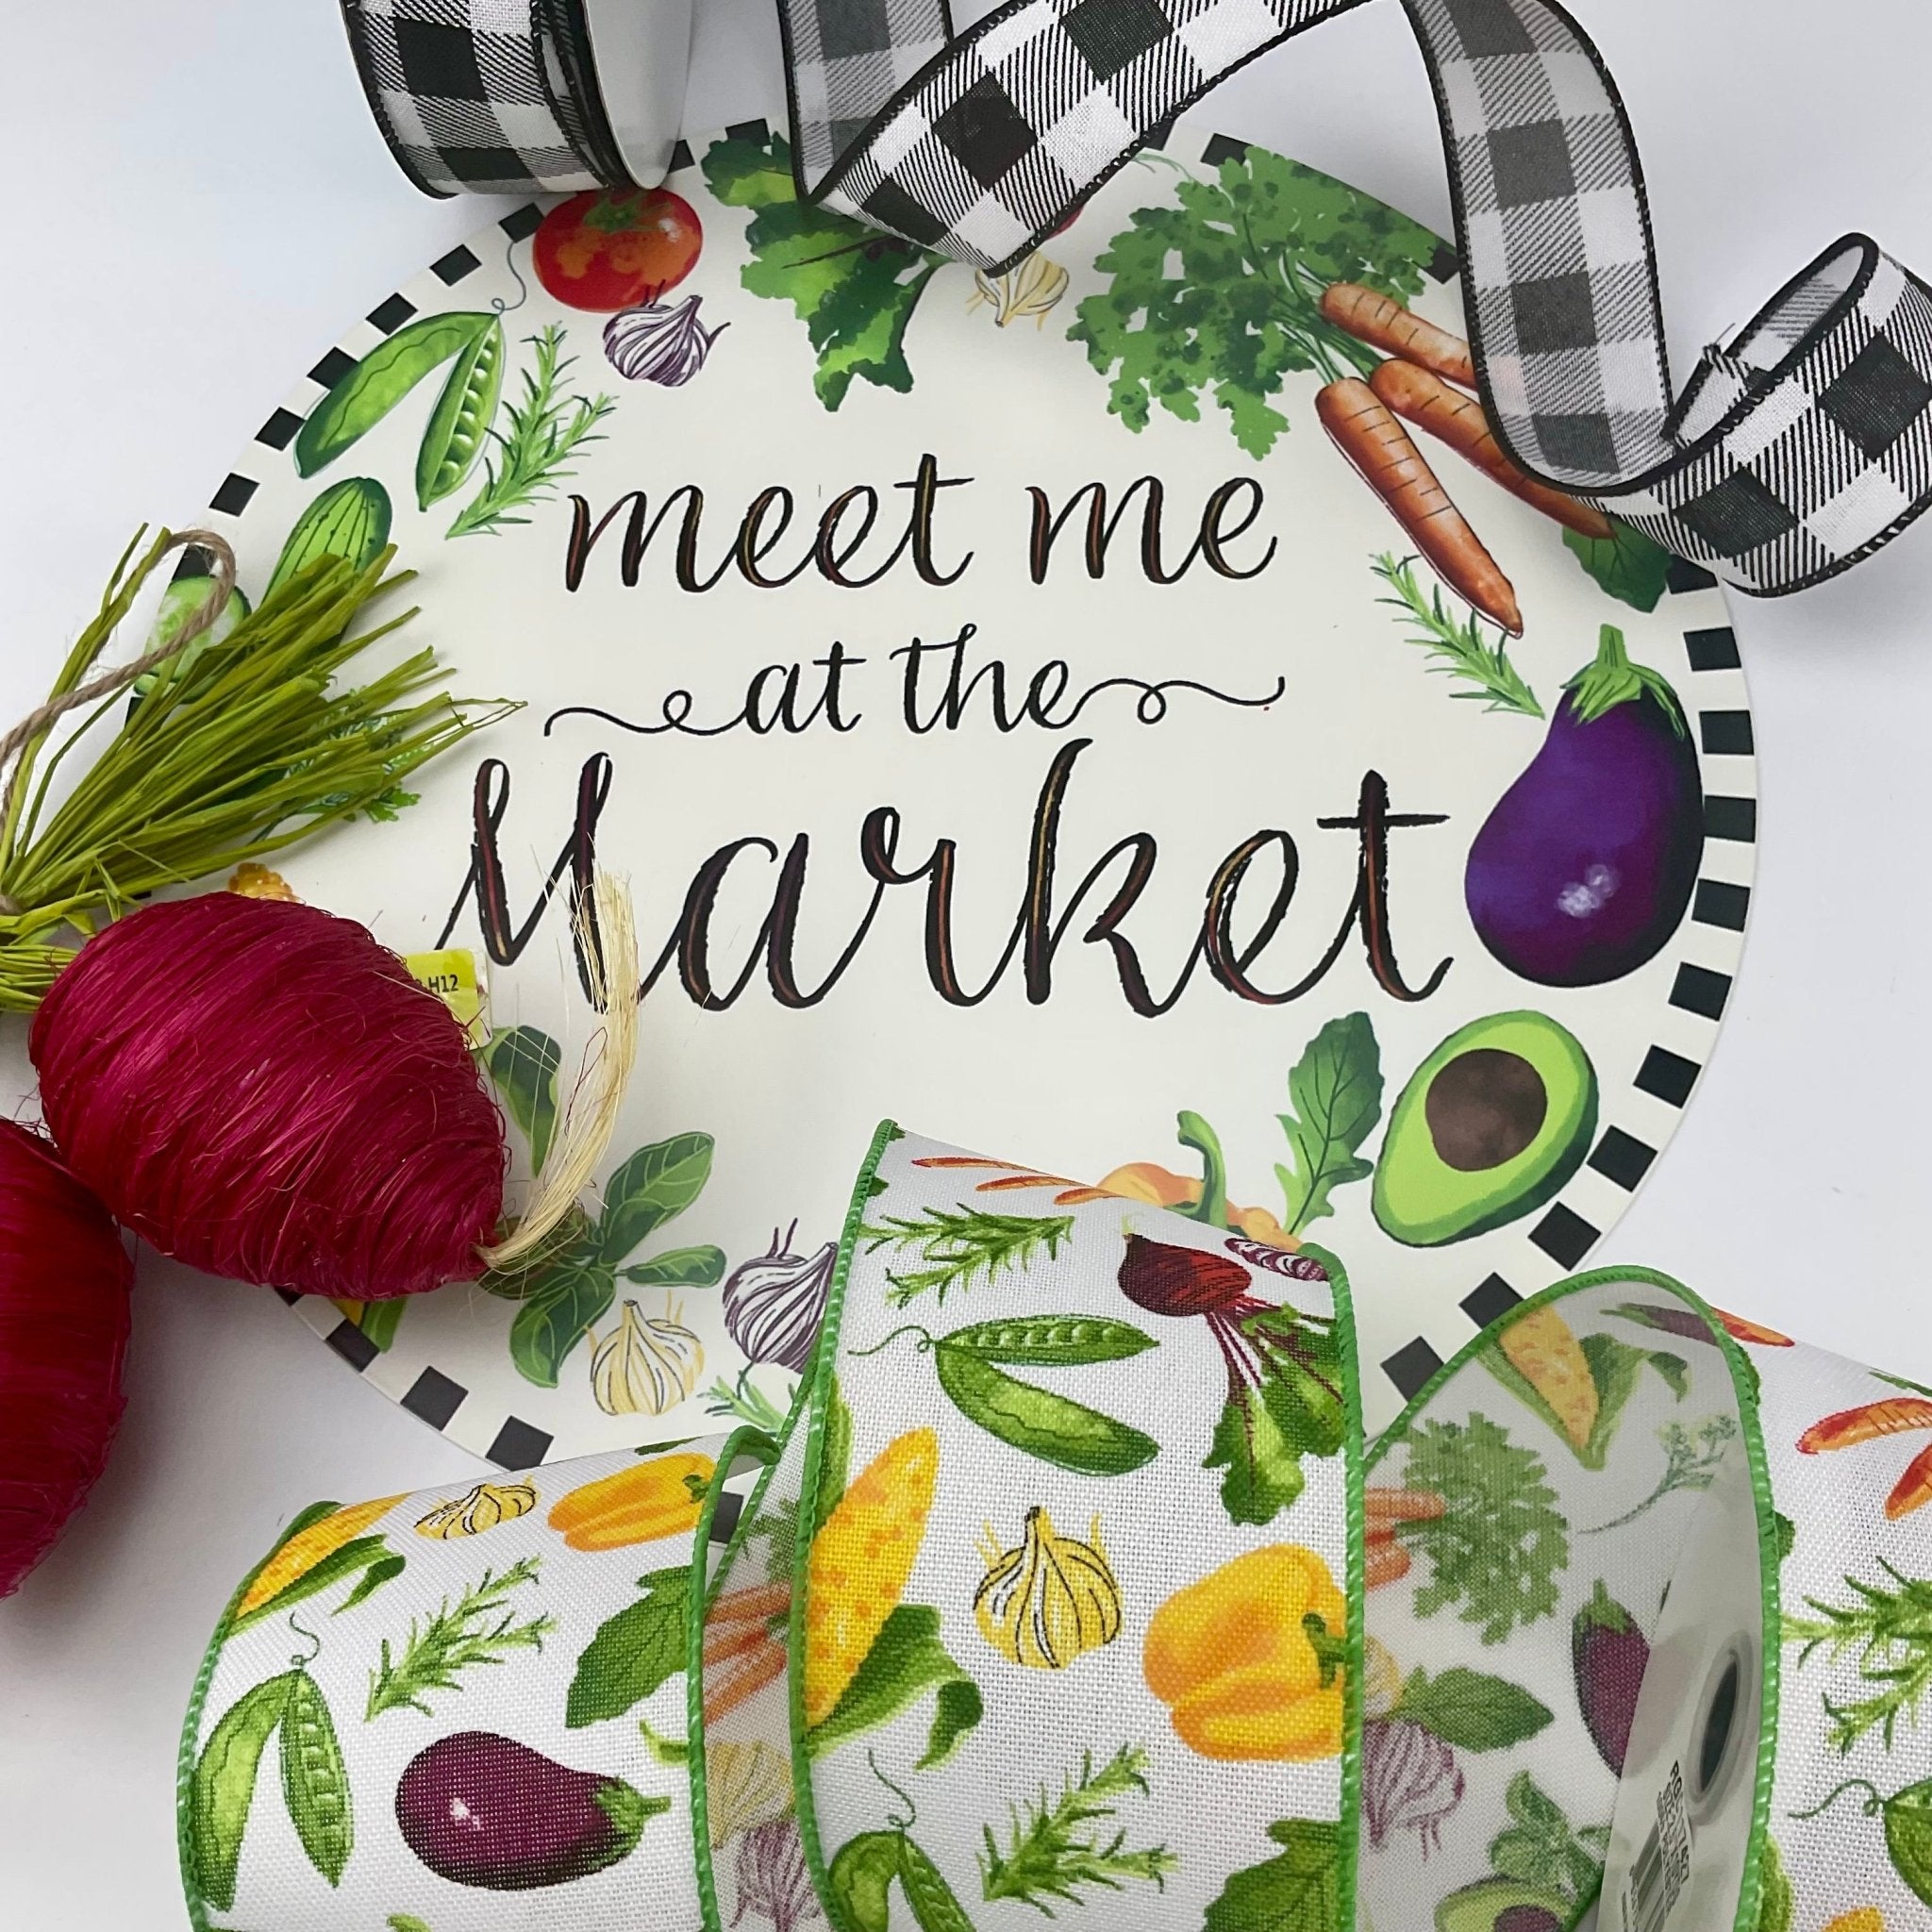 Meet me at the market mini kit - Greenery Market